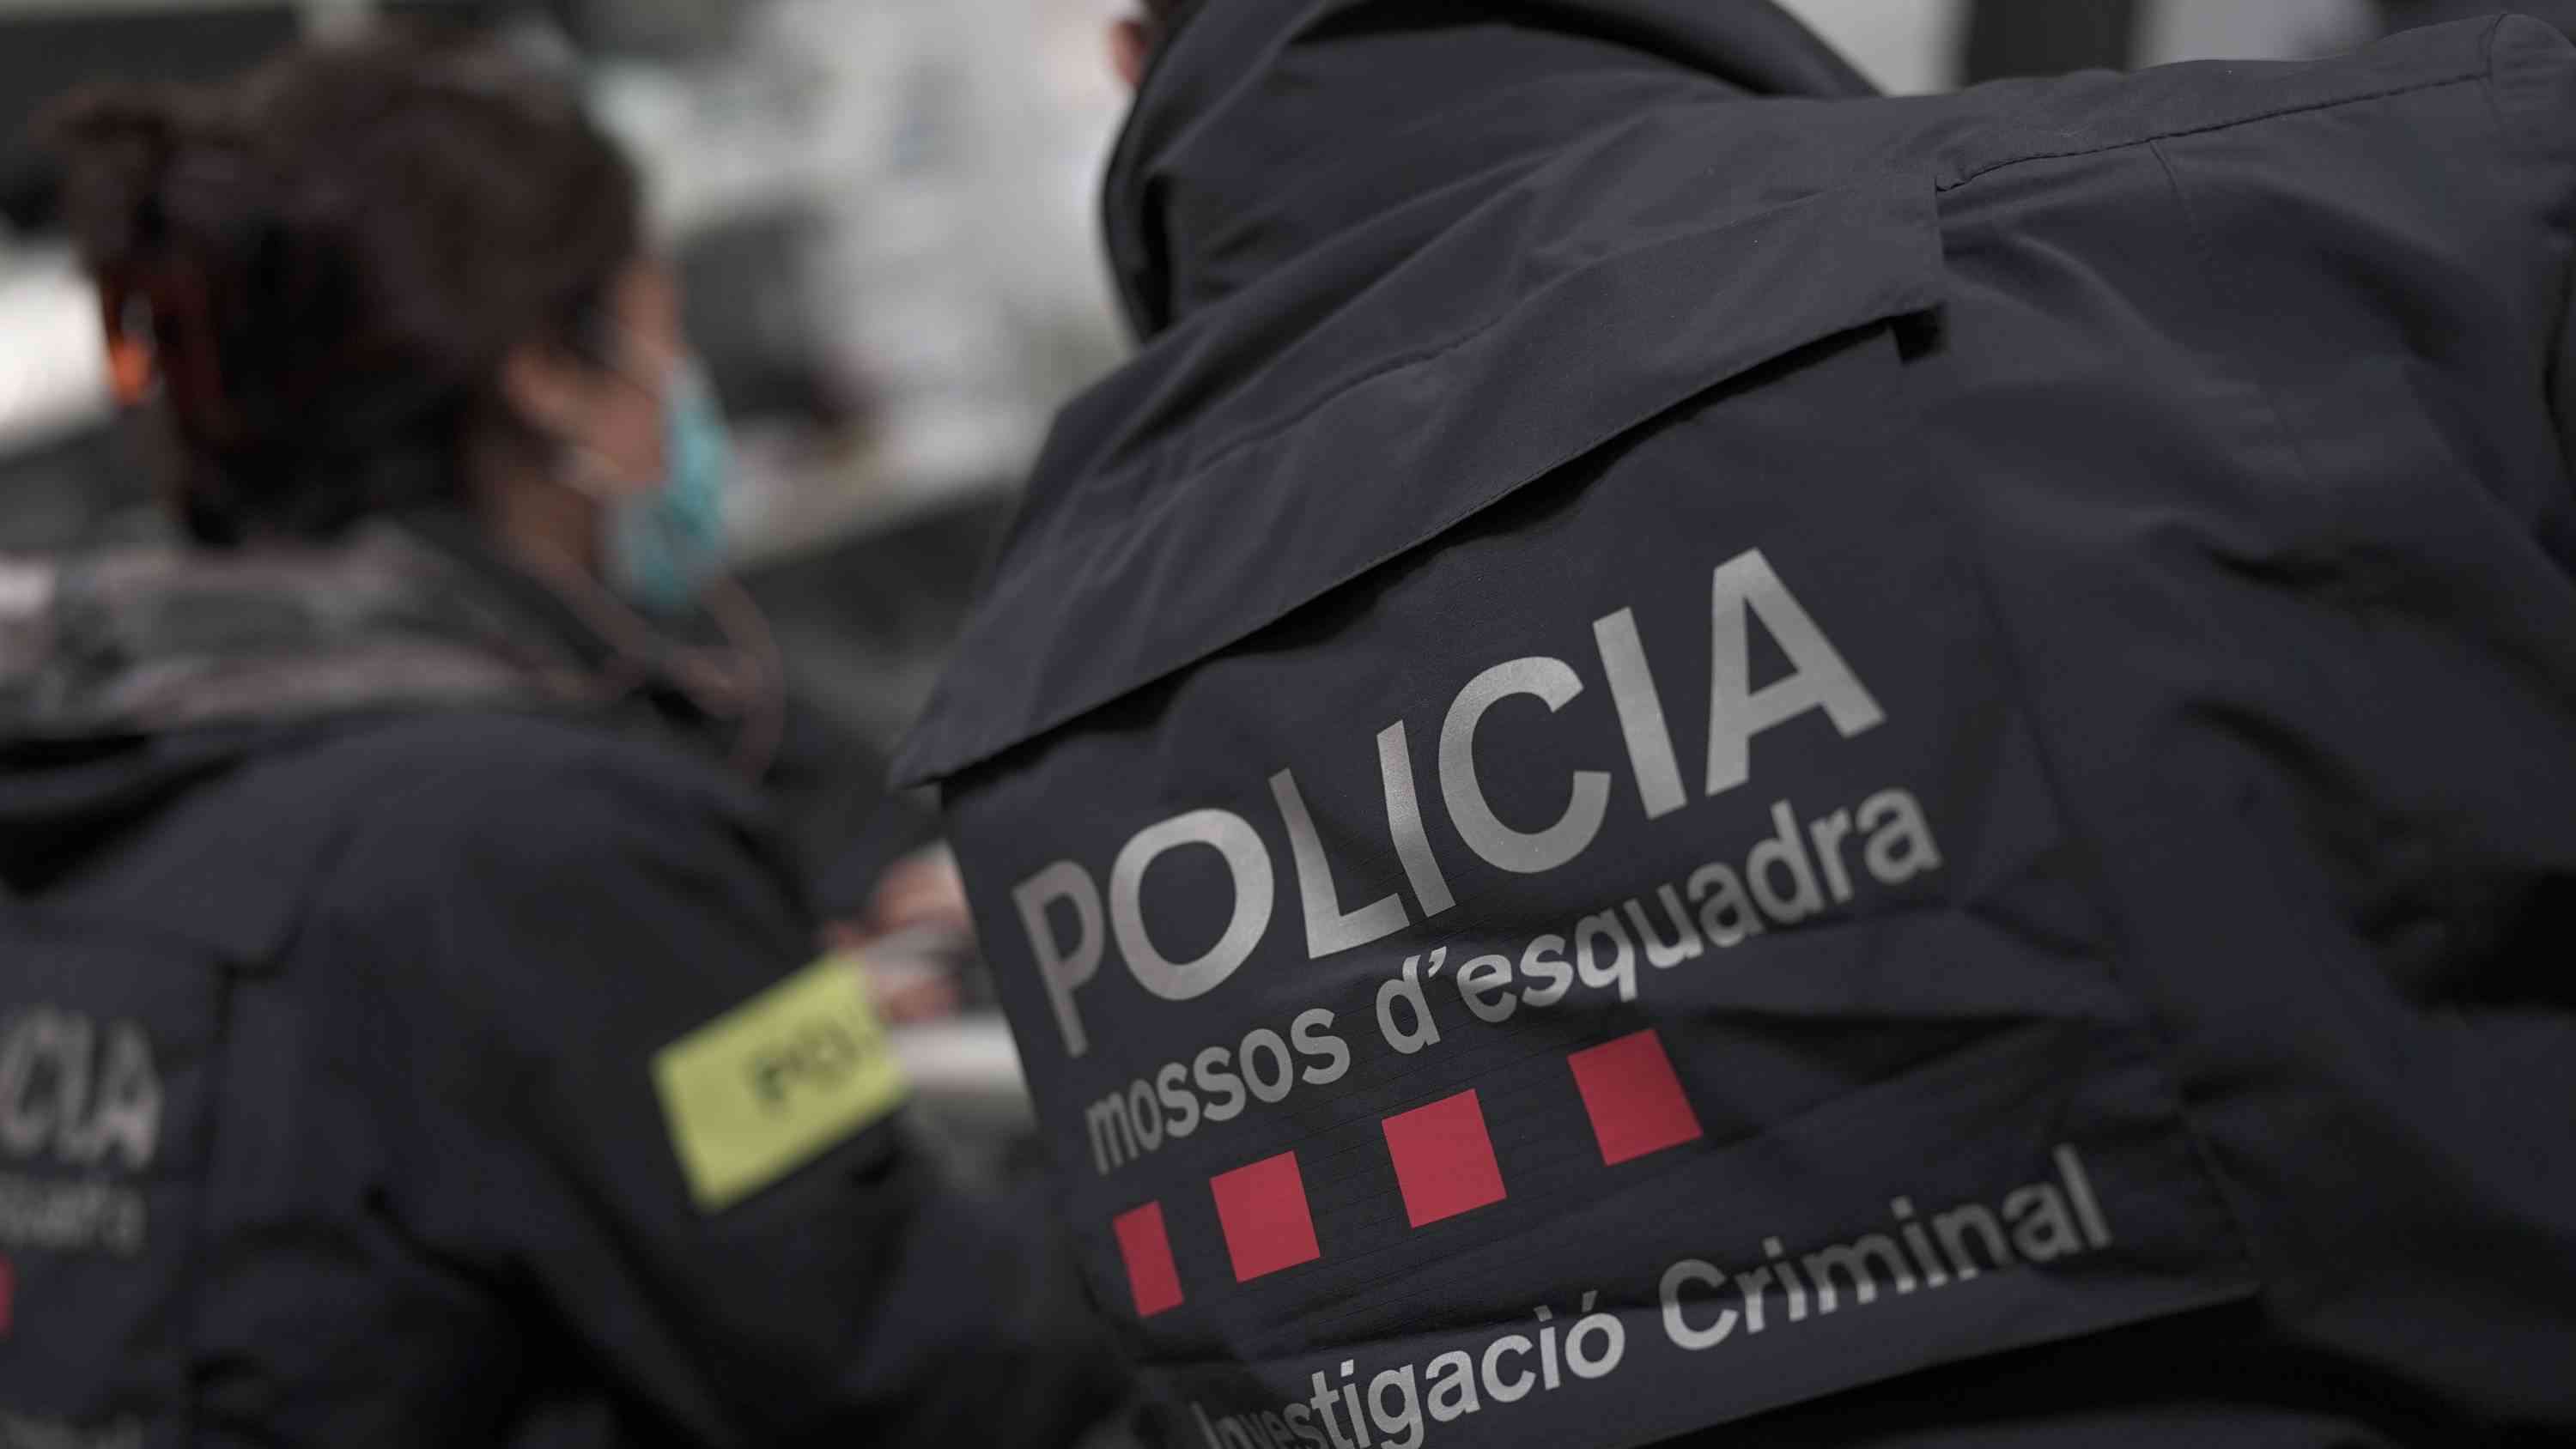 Apareix el cadàver d'una dona apunyalada en un carrer a Esparreguera: els Mossos investiguen un nou crim